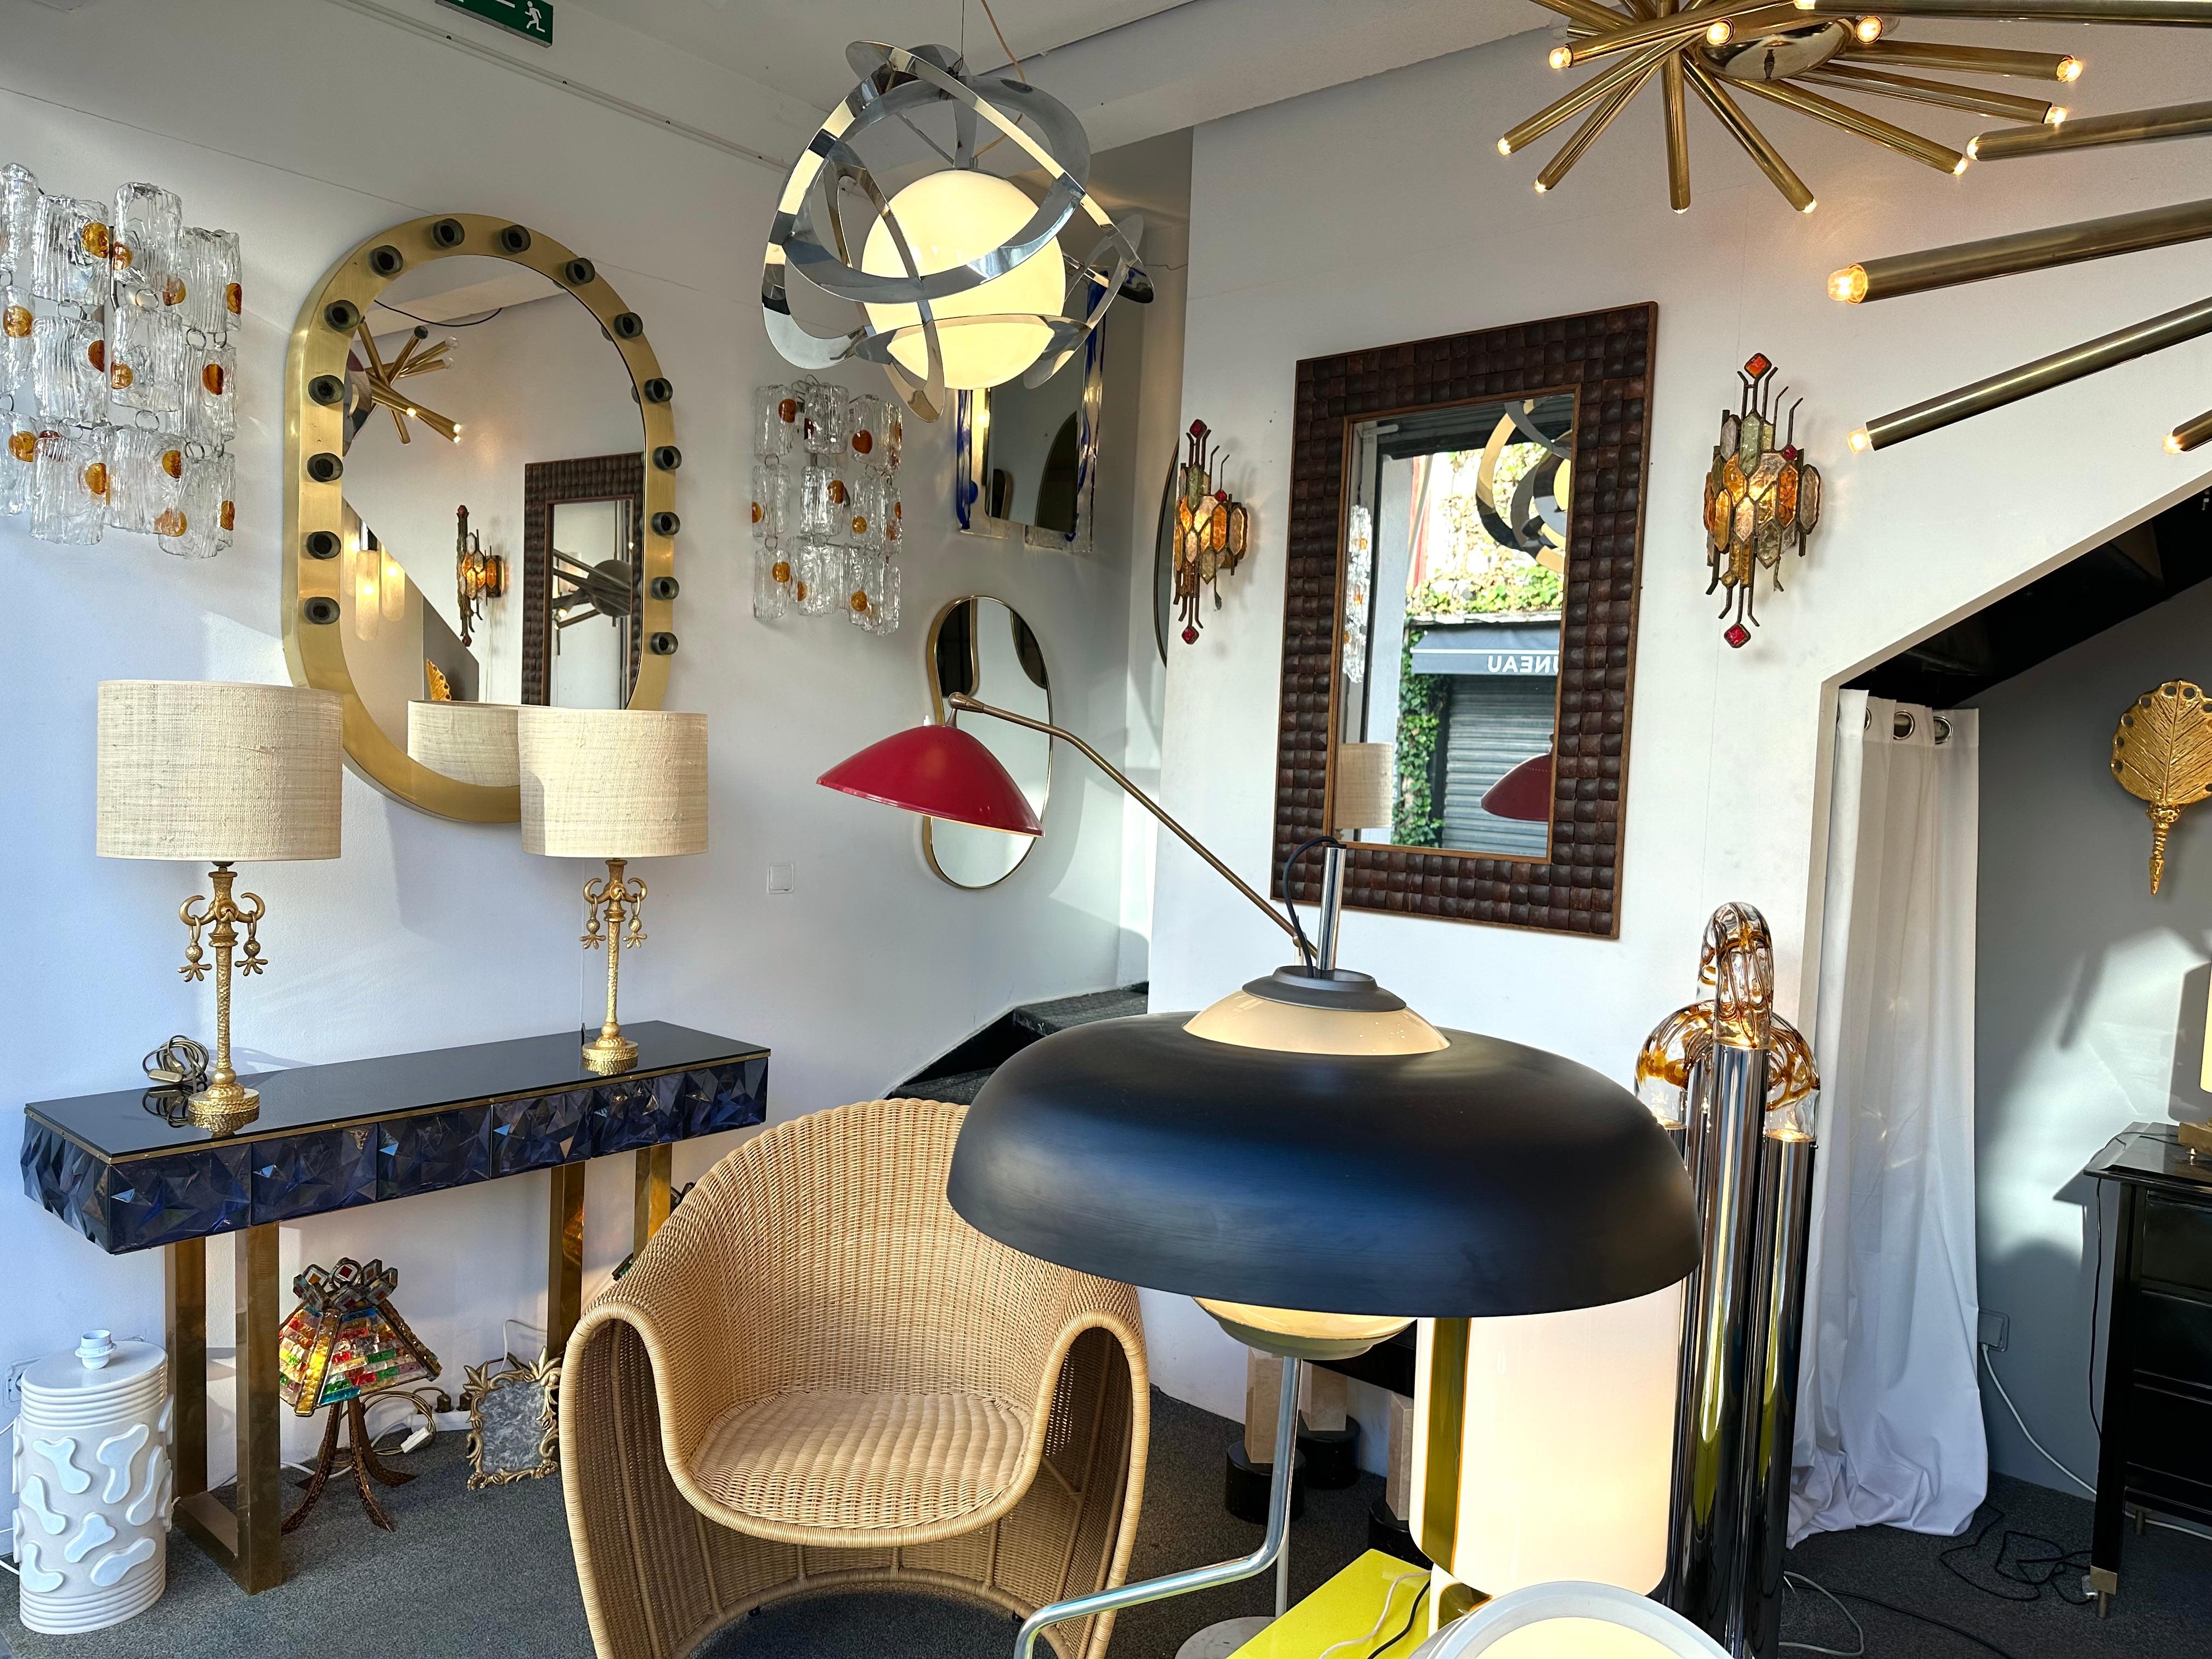 Seltenes Paar Tisch- oder Nachttischlampen aus vergoldetem Metall, Bronze-Stil von Nicolas Dewael für Fondica. Unterschreiben Sie Dewäel und stempeln Sie Fondica auf den Sockel. Berühmte Künstler, die für die Manufaktur gearbeitet haben, wie